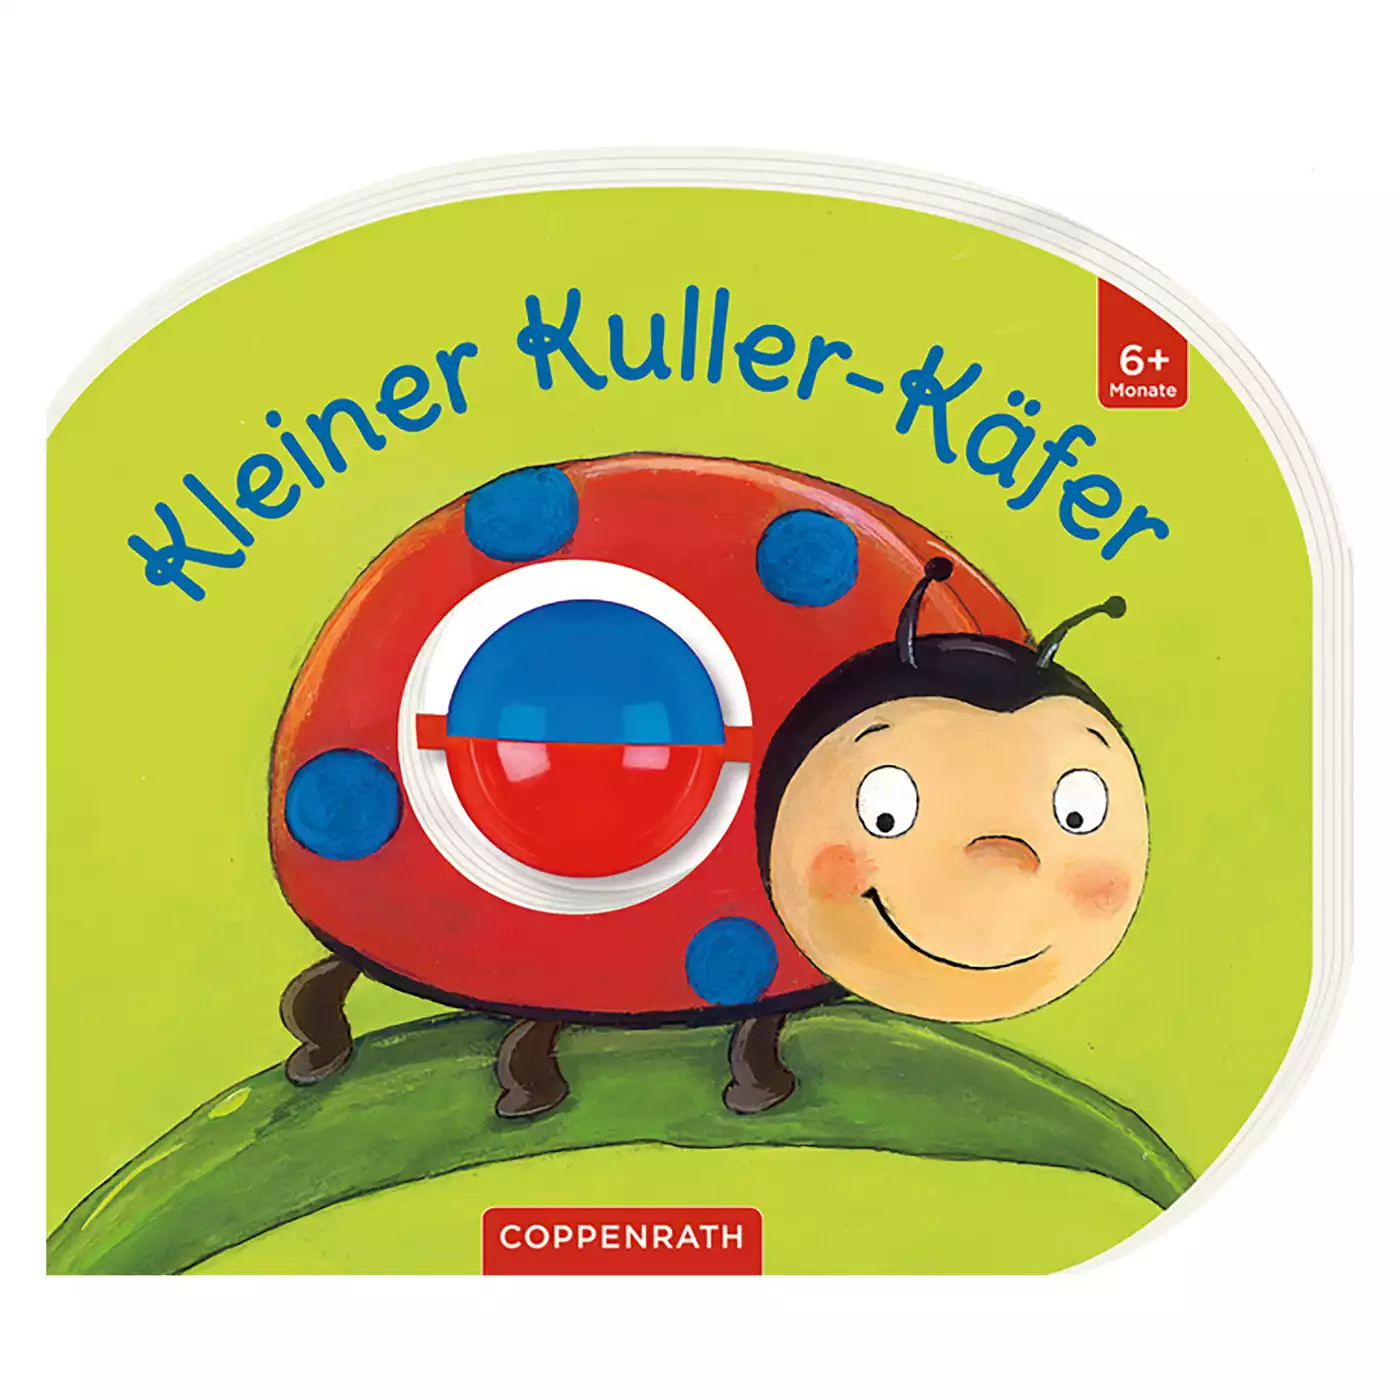 Mein erstes Kugelbuch: Kleiner Kuller-Käfer COPPENRATH 2000570076205 3